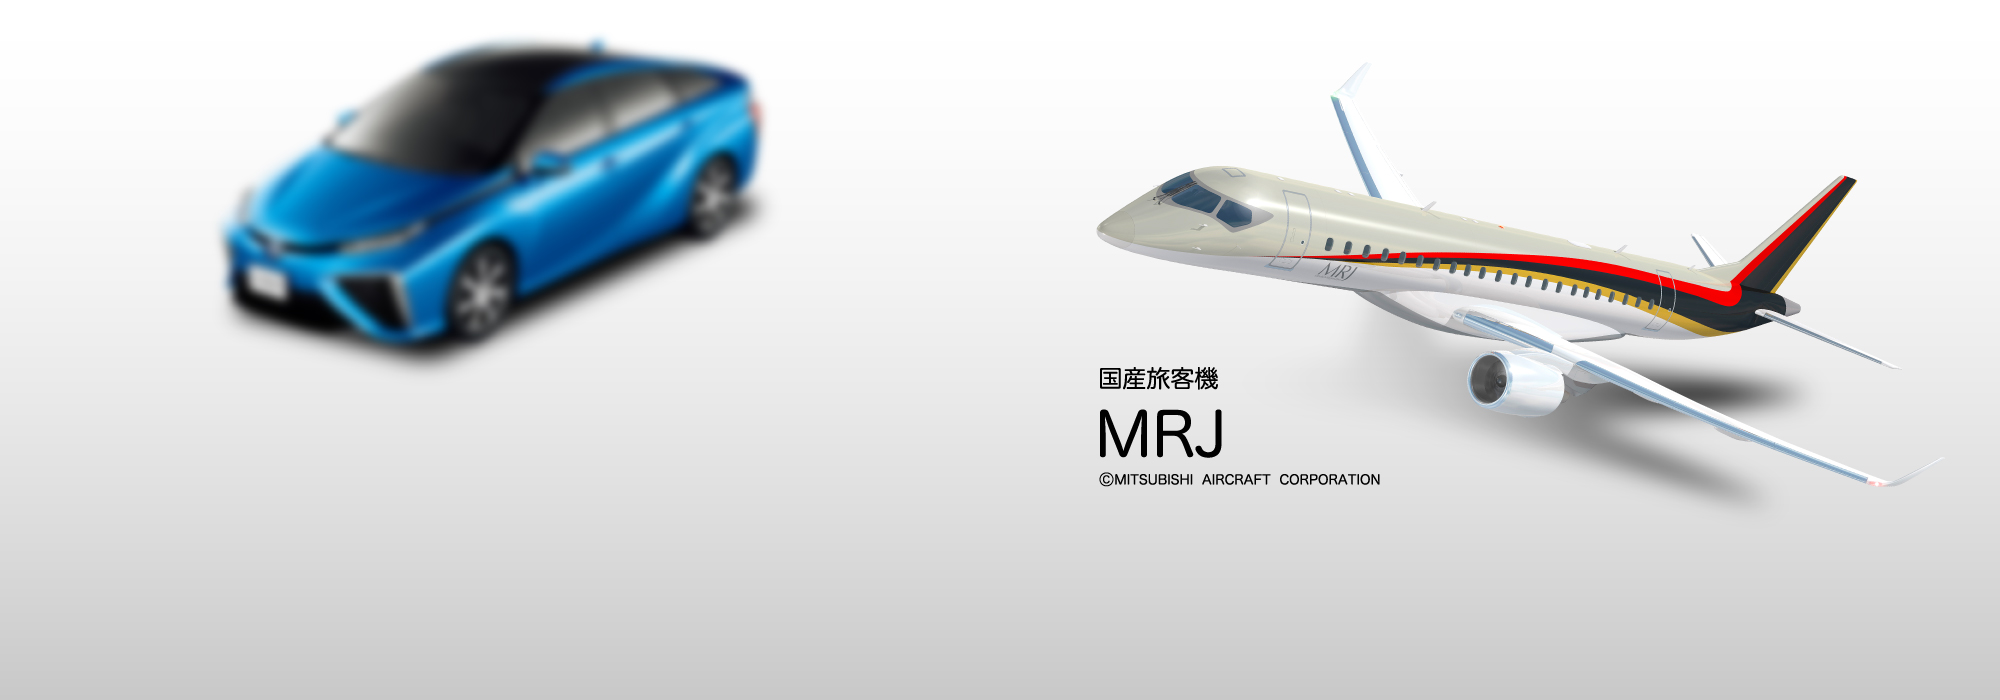 国産旅客機「MRJ」